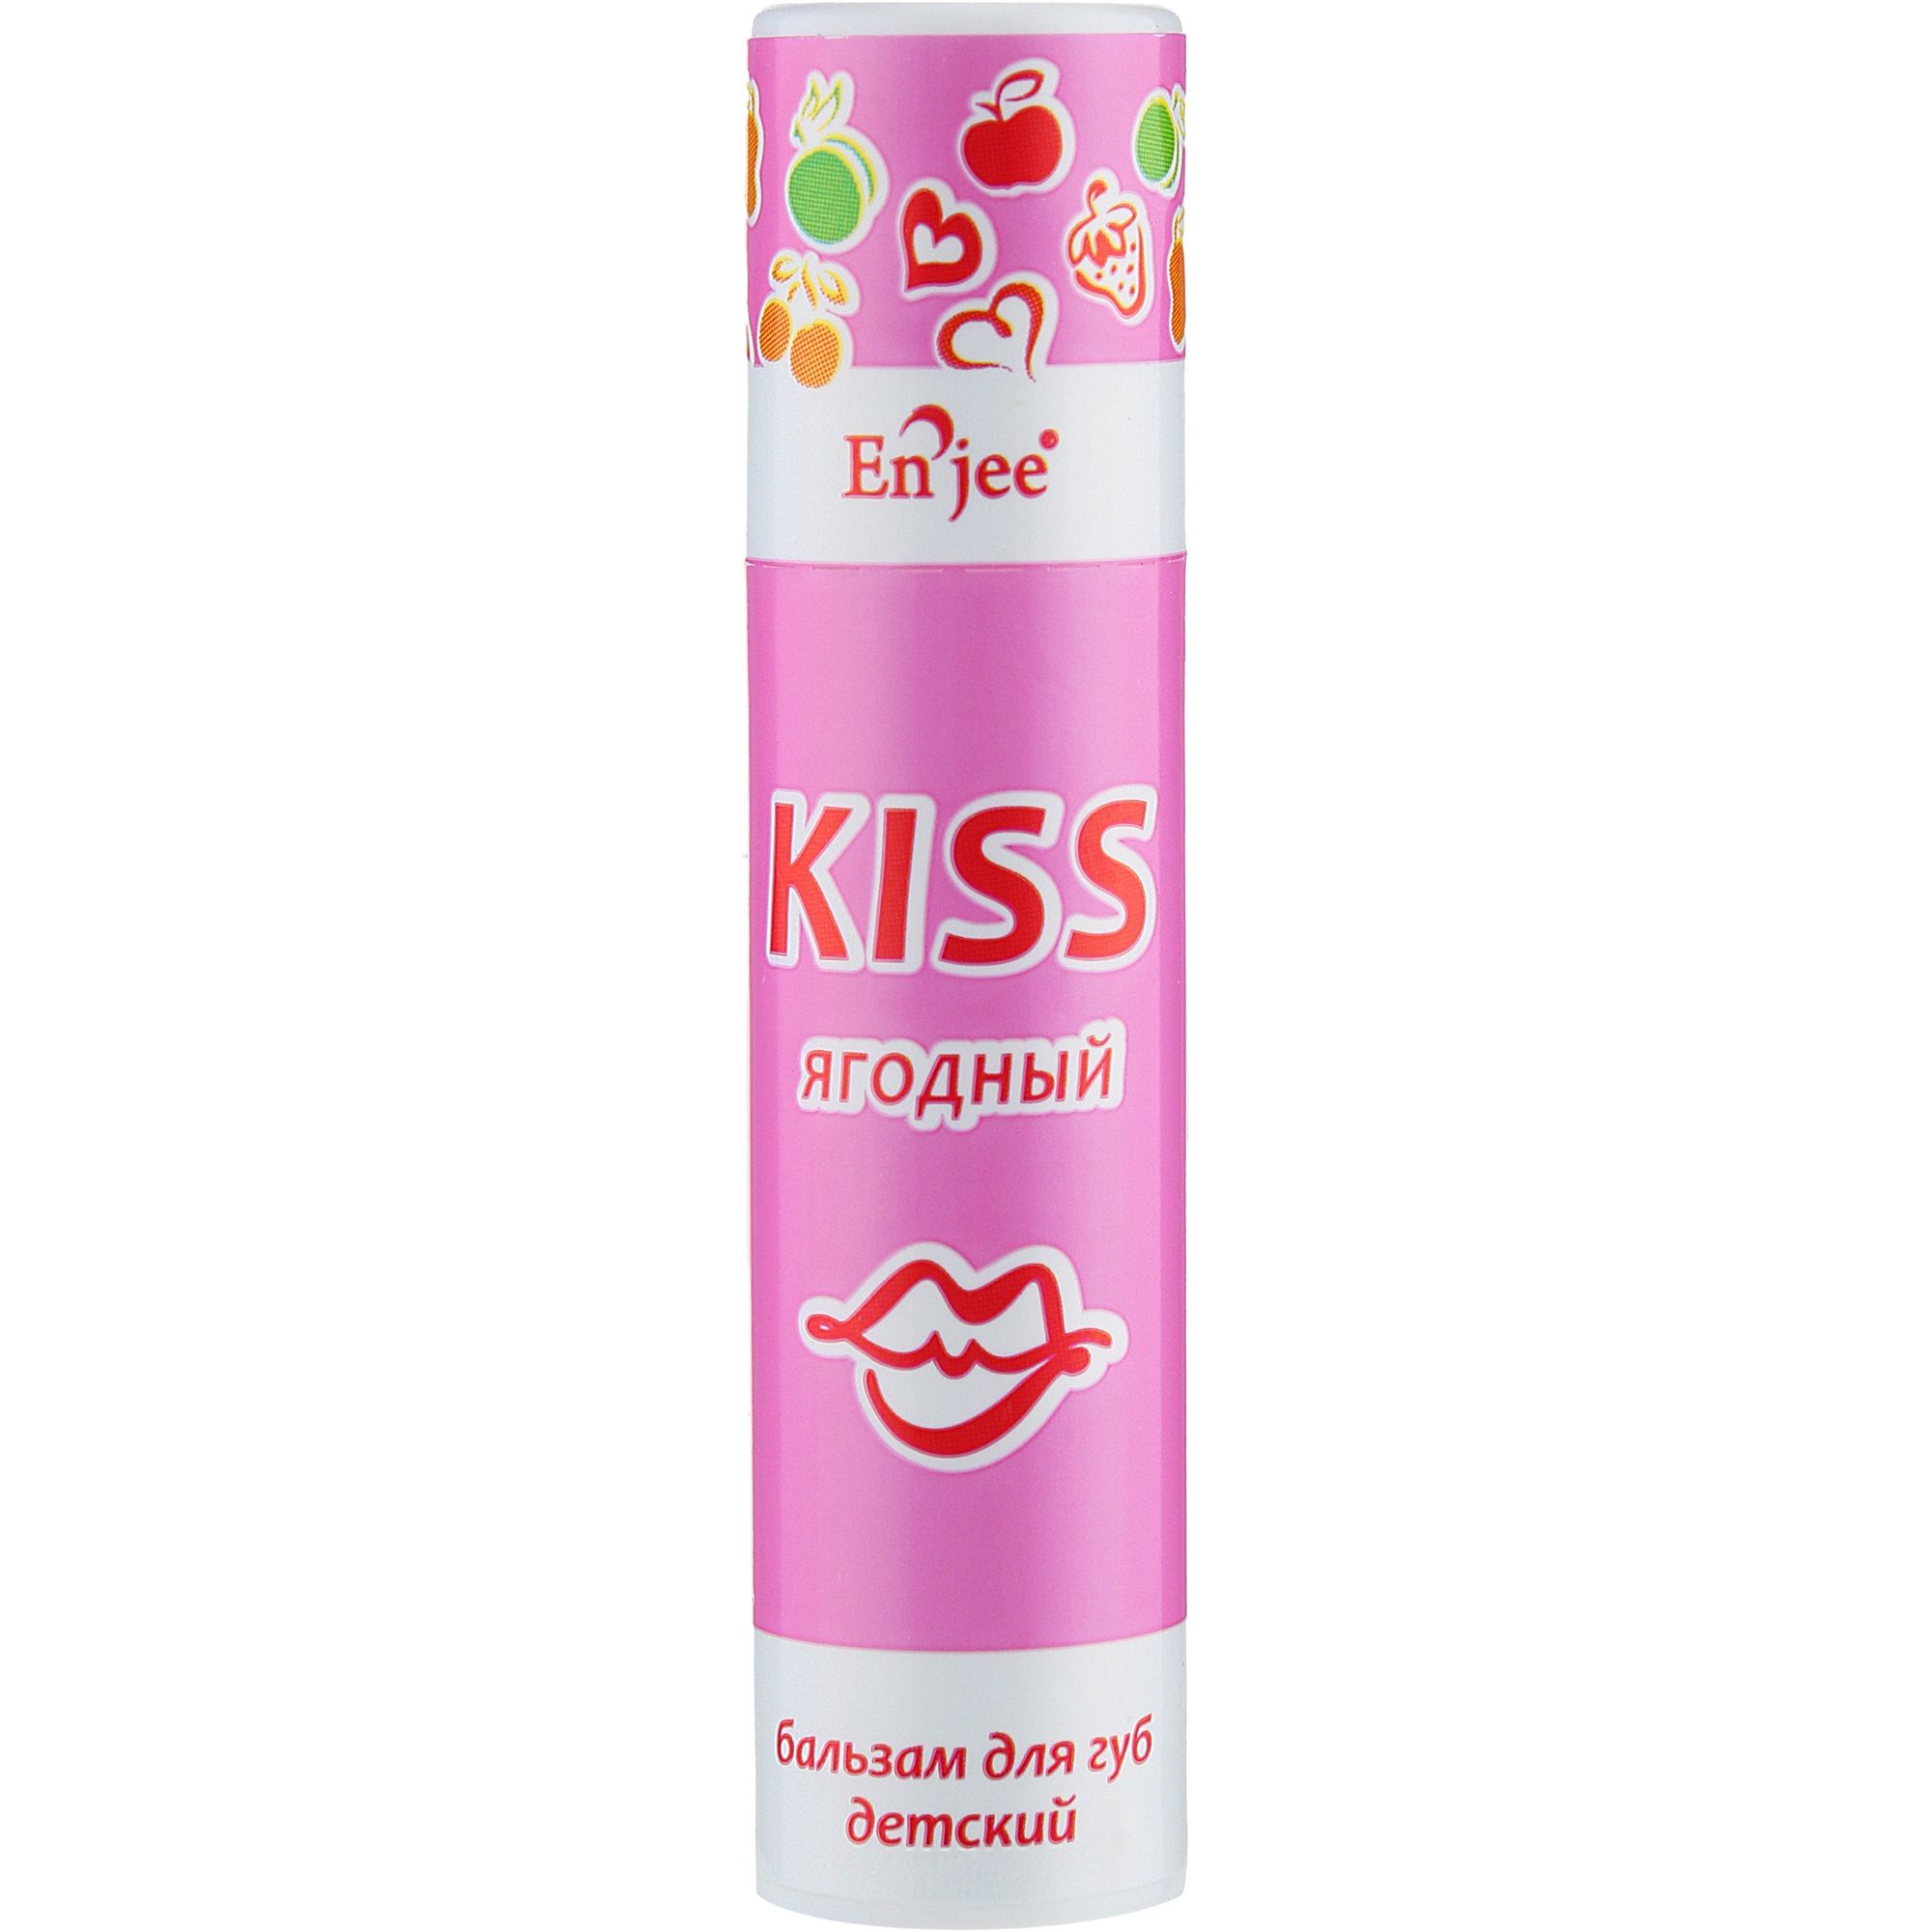 Бальзам для губ детский Enjee KISS Ягодный роликовый 6 мл - фото 1